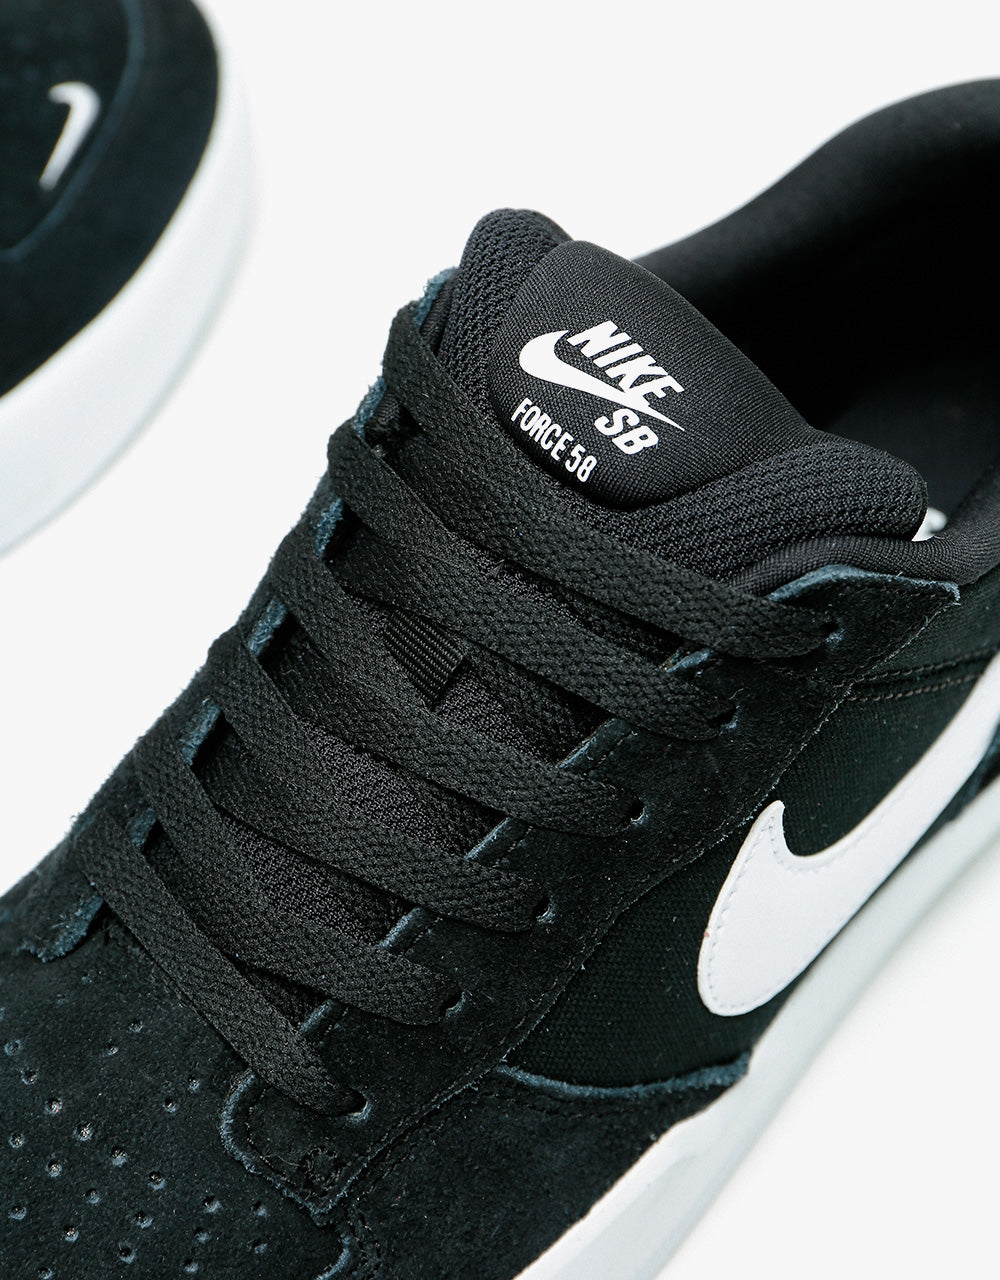 Nike SB Force 58 Skate Shoes - Black/White-Black